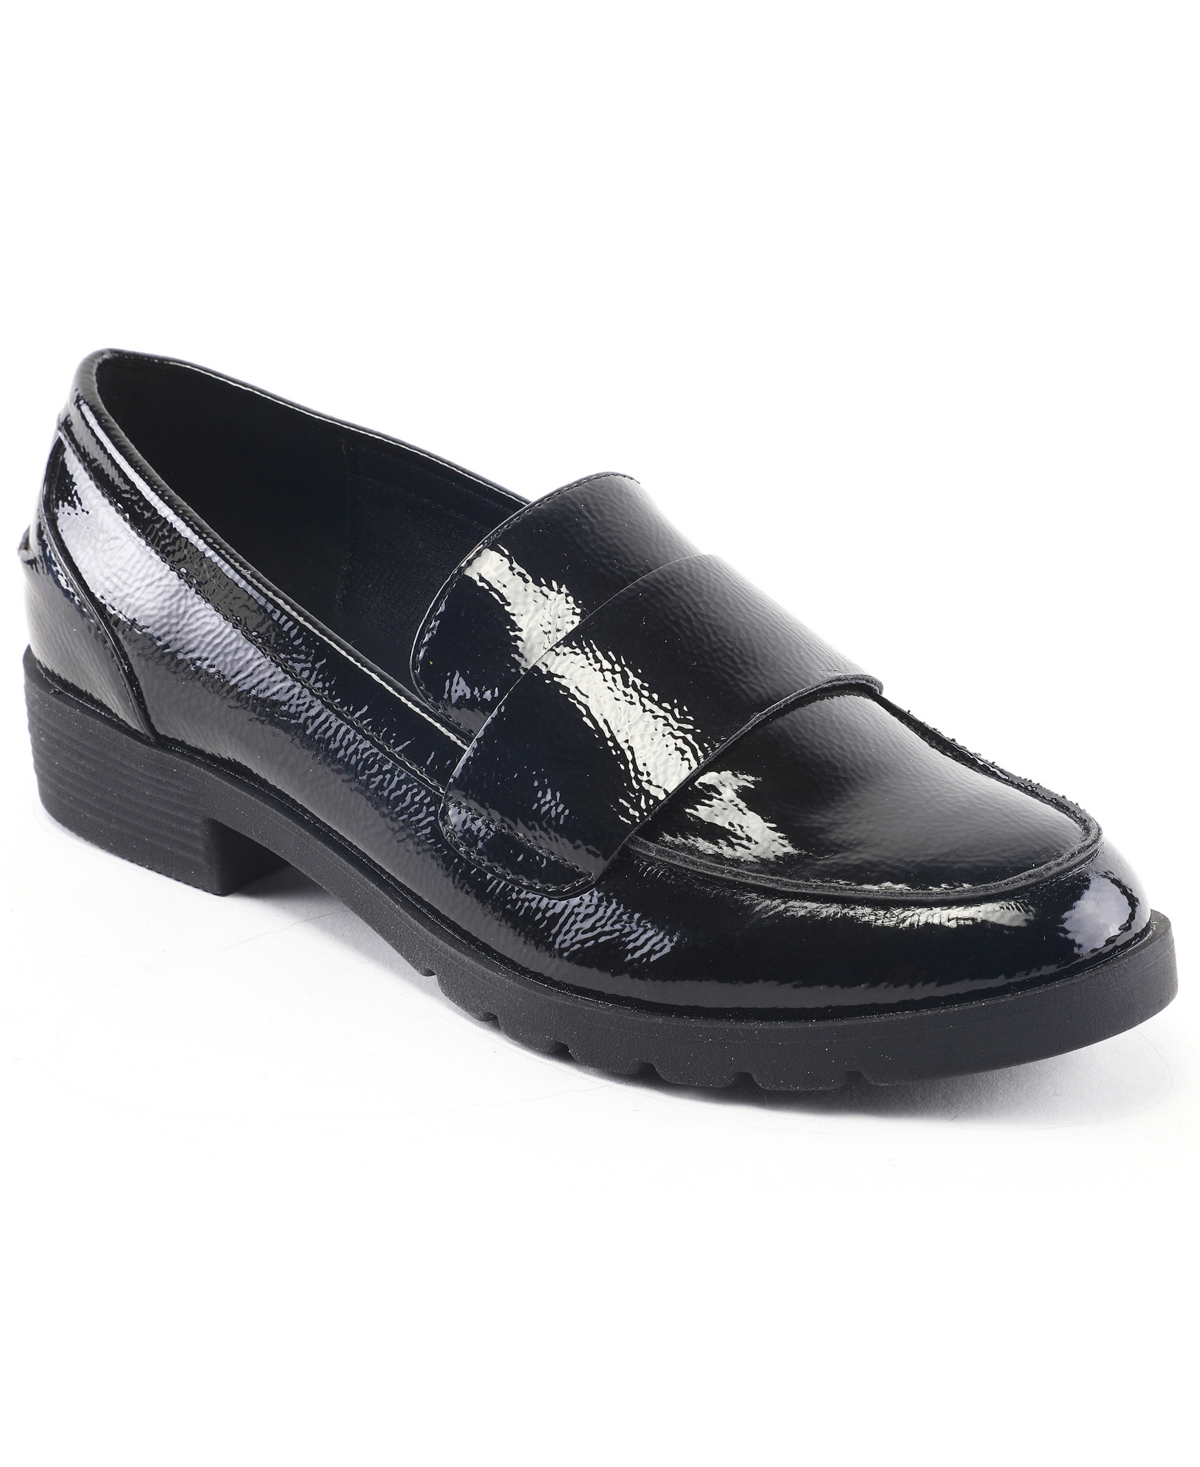 Women's Fern Slip-On Loafer - Black Patent